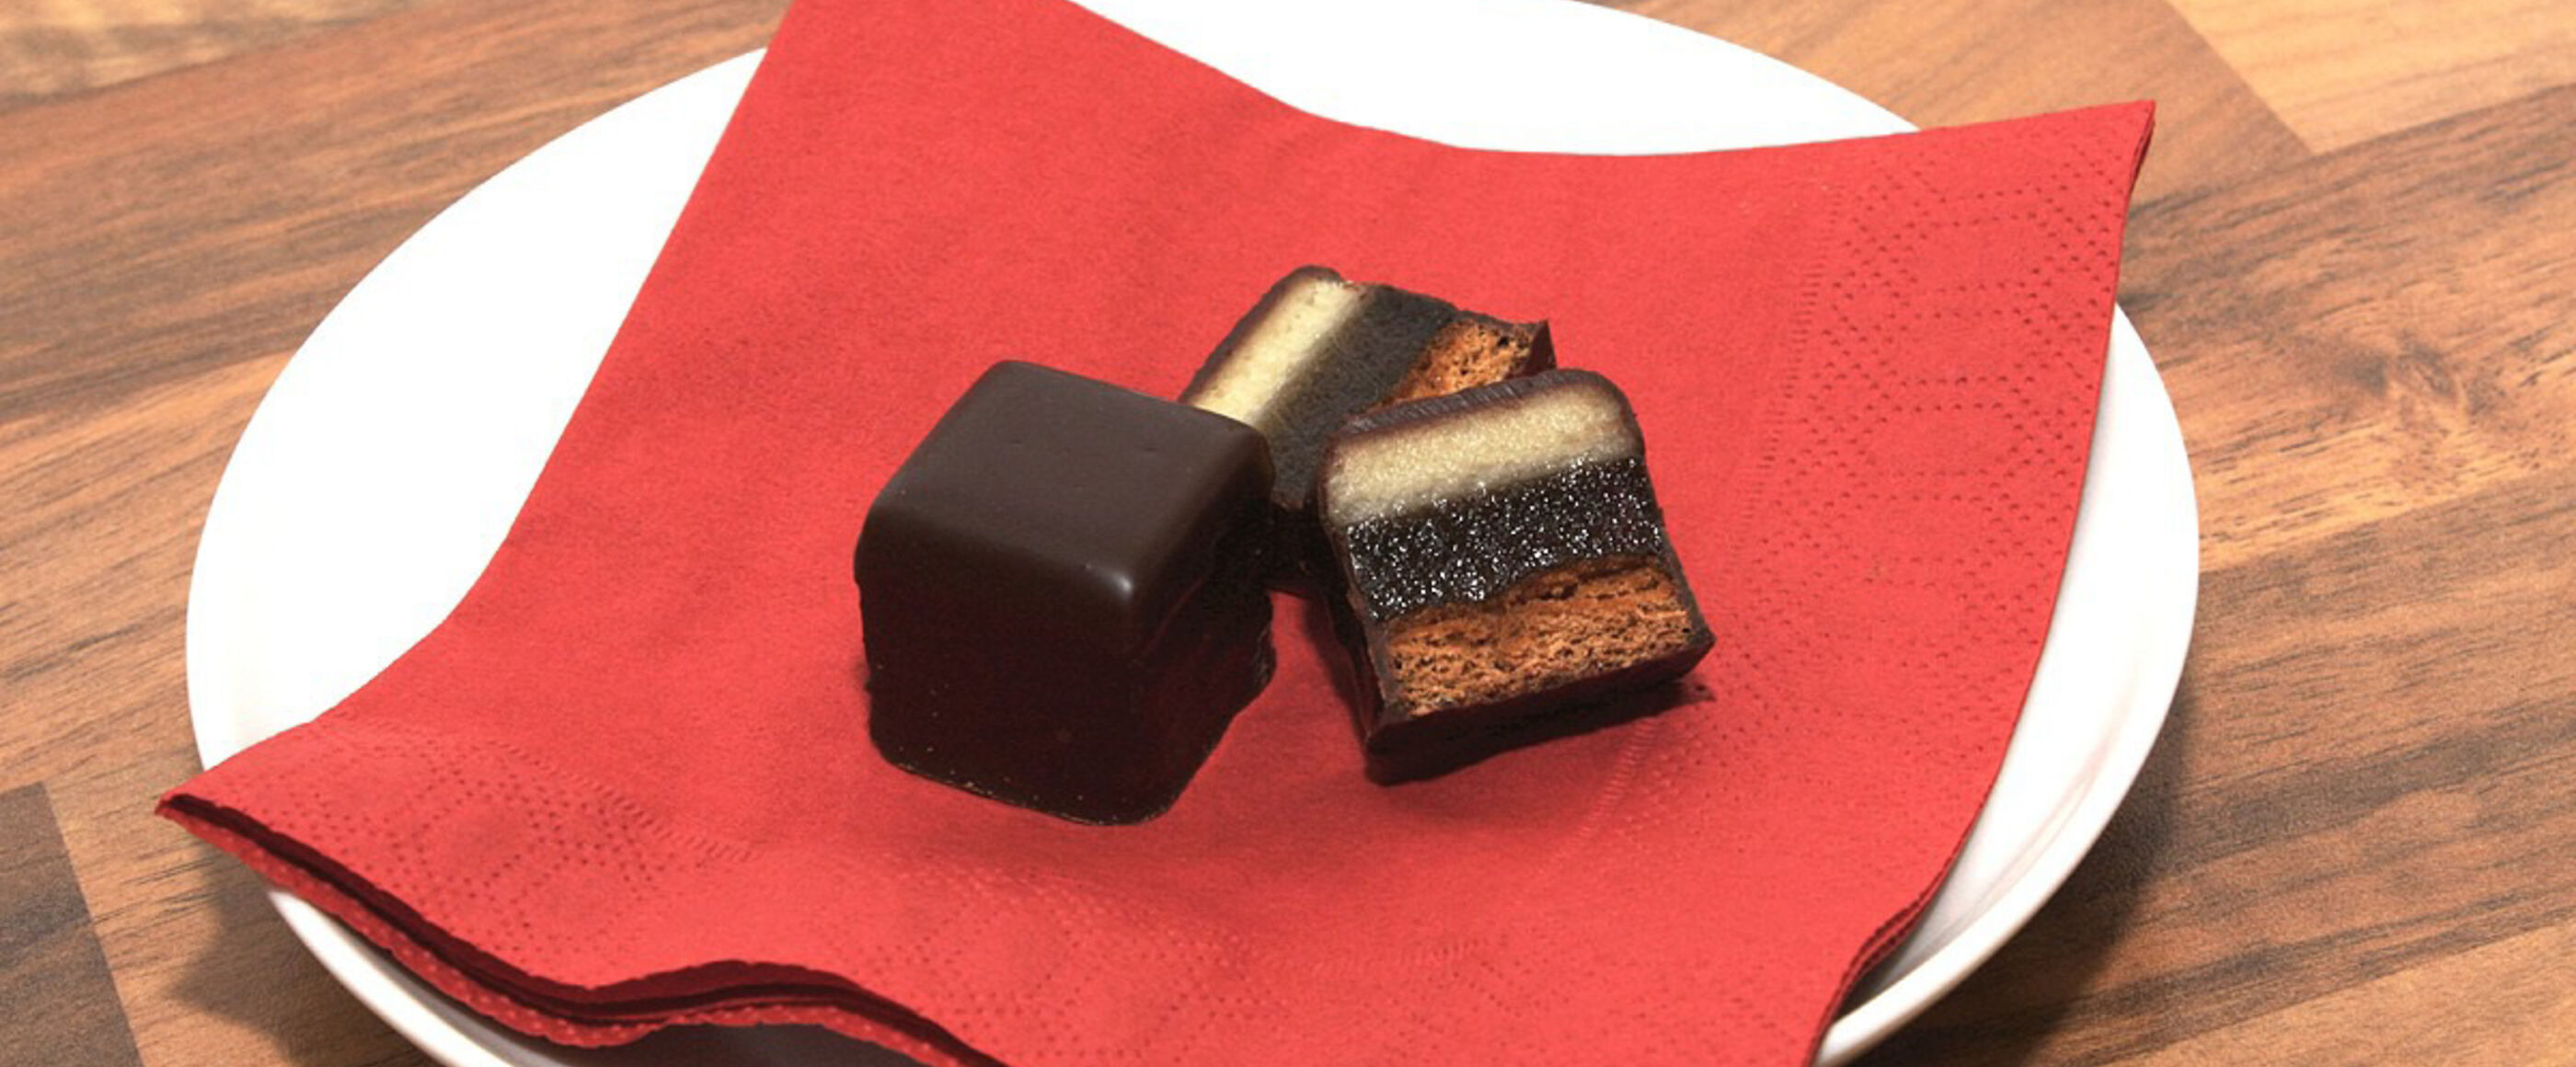 Drei Schichten verbergen sich unter dem Schokoladenmantel des Dominosteins: Lebkuchen, Gelee und Marzipan.